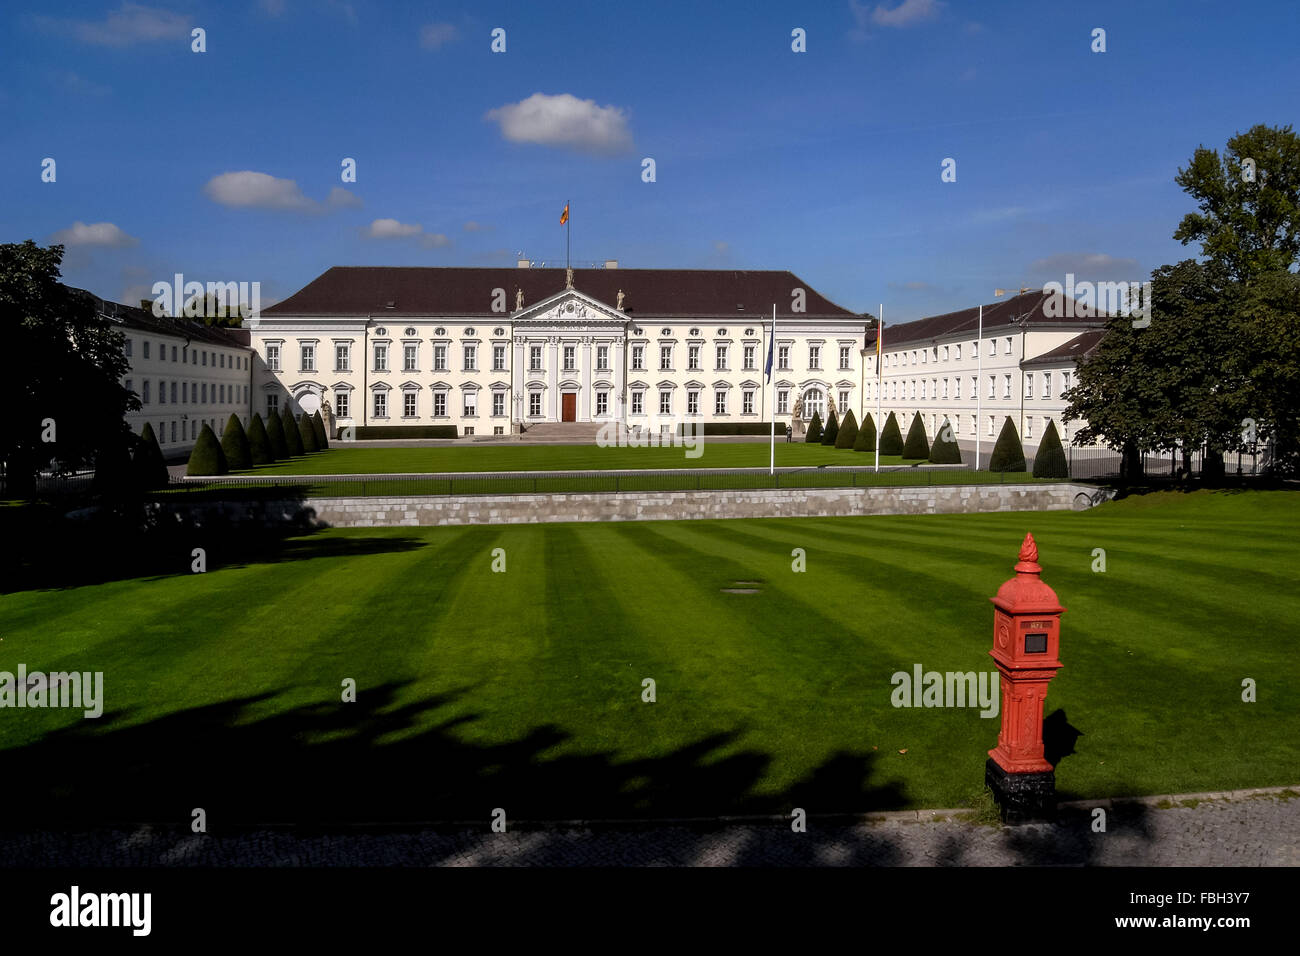 Le château de Bellevue, résidence du Président de l'Allemagne, dans le quartier Tiergarten de Berlin. Banque D'Images